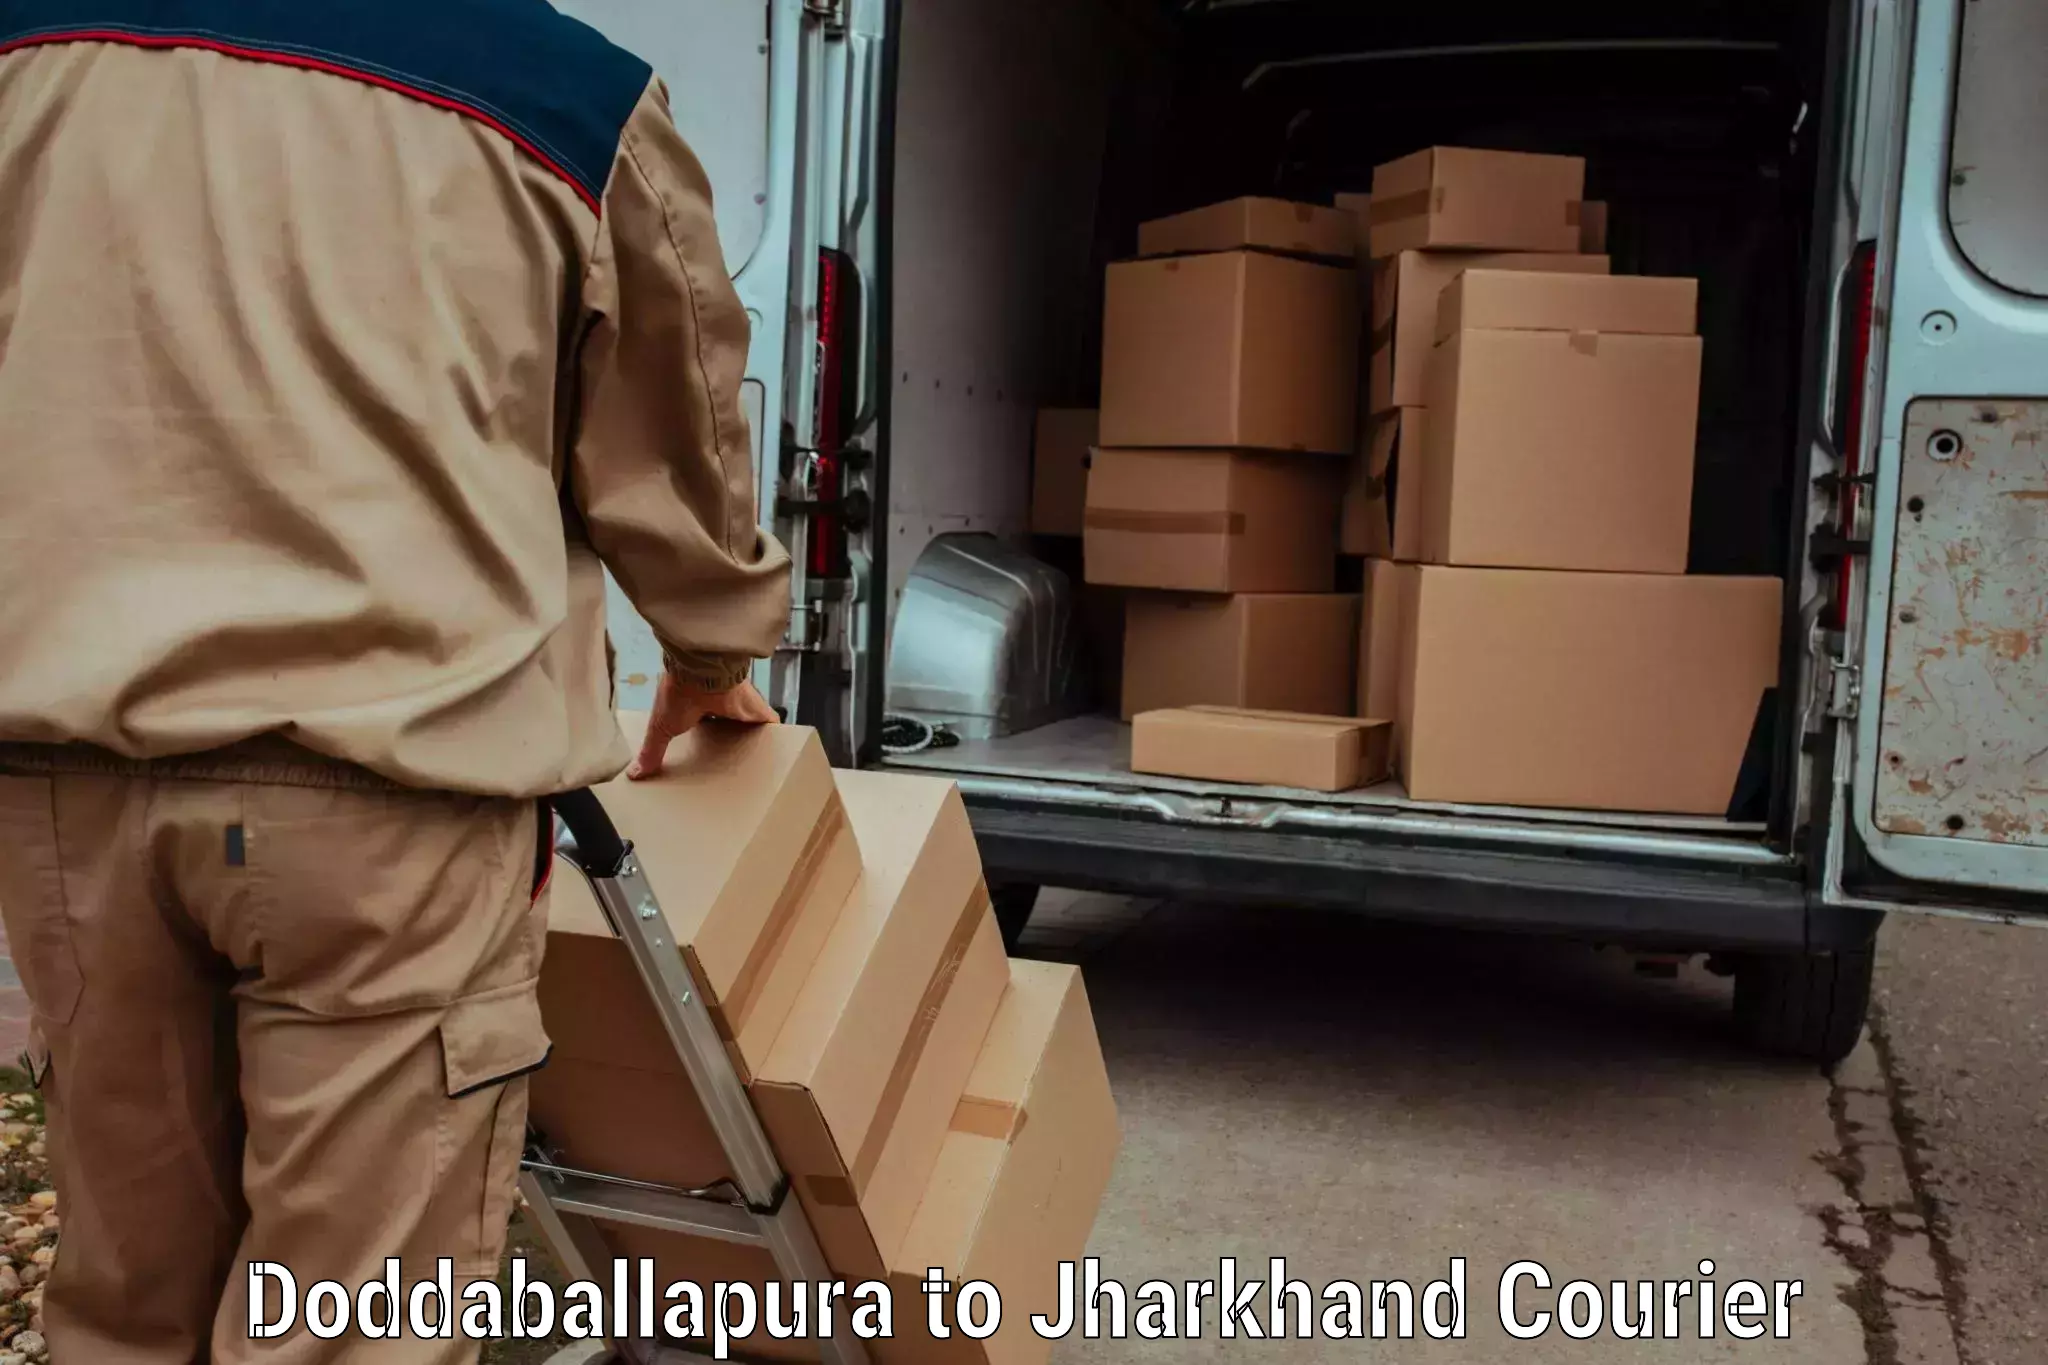 Efficient cargo handling Doddaballapura to Chandankiyari